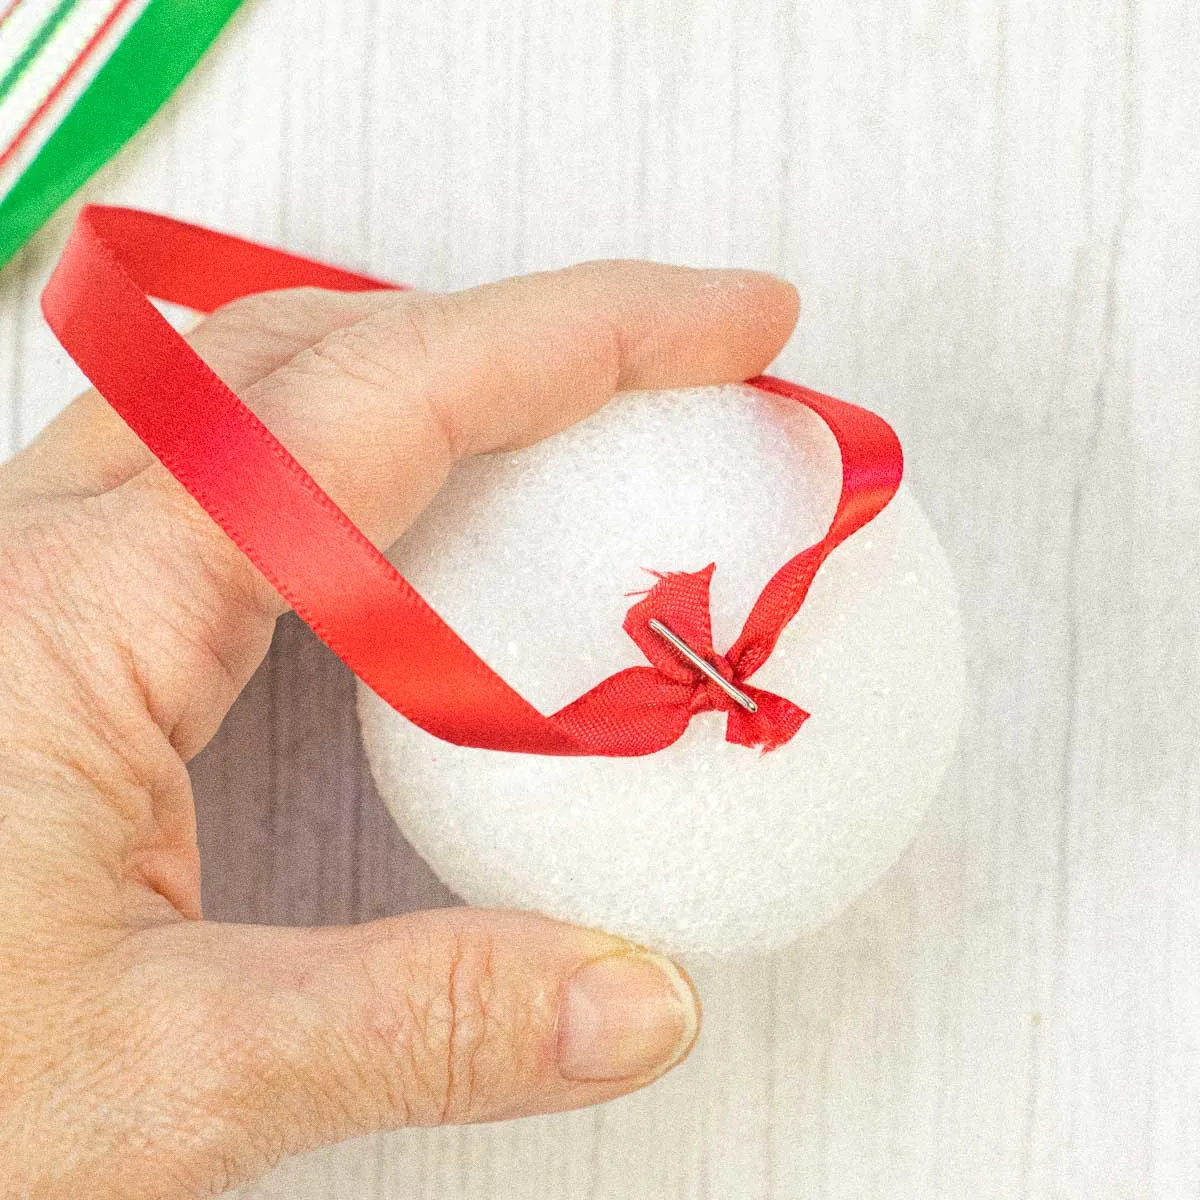 A T pin pierced through a ribbon to attach it to a Styrofoam ball.